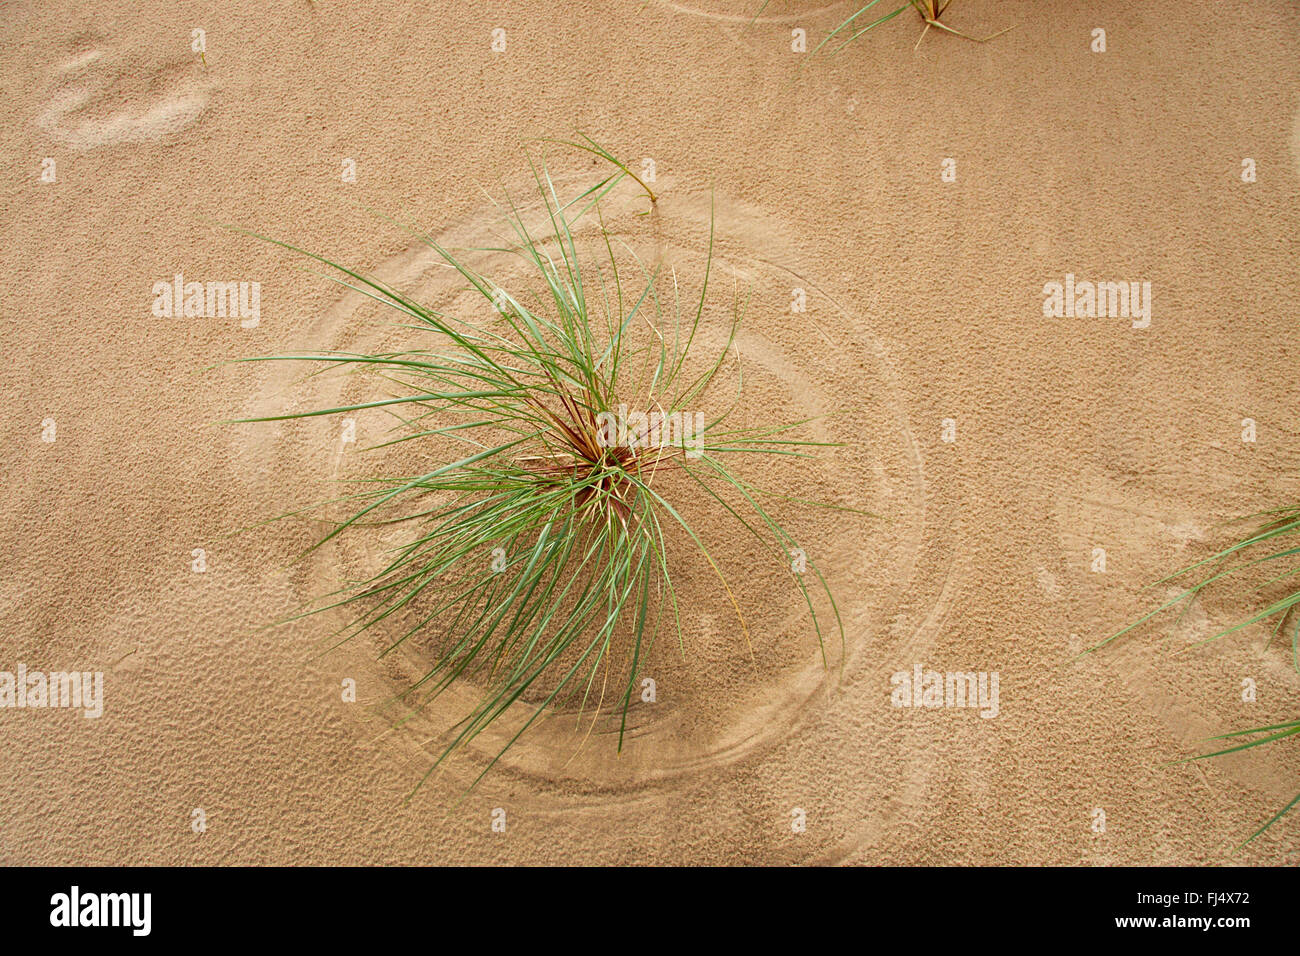 Strandhafer, Europäische Strandhafer, Dünengebieten Grass, Psamma, Meer Sand-Reed (Ammophila Arenaria), auf Sand, Ansicht von oben, Dänemark, Juetland, Thy Nationalpark Stockfoto